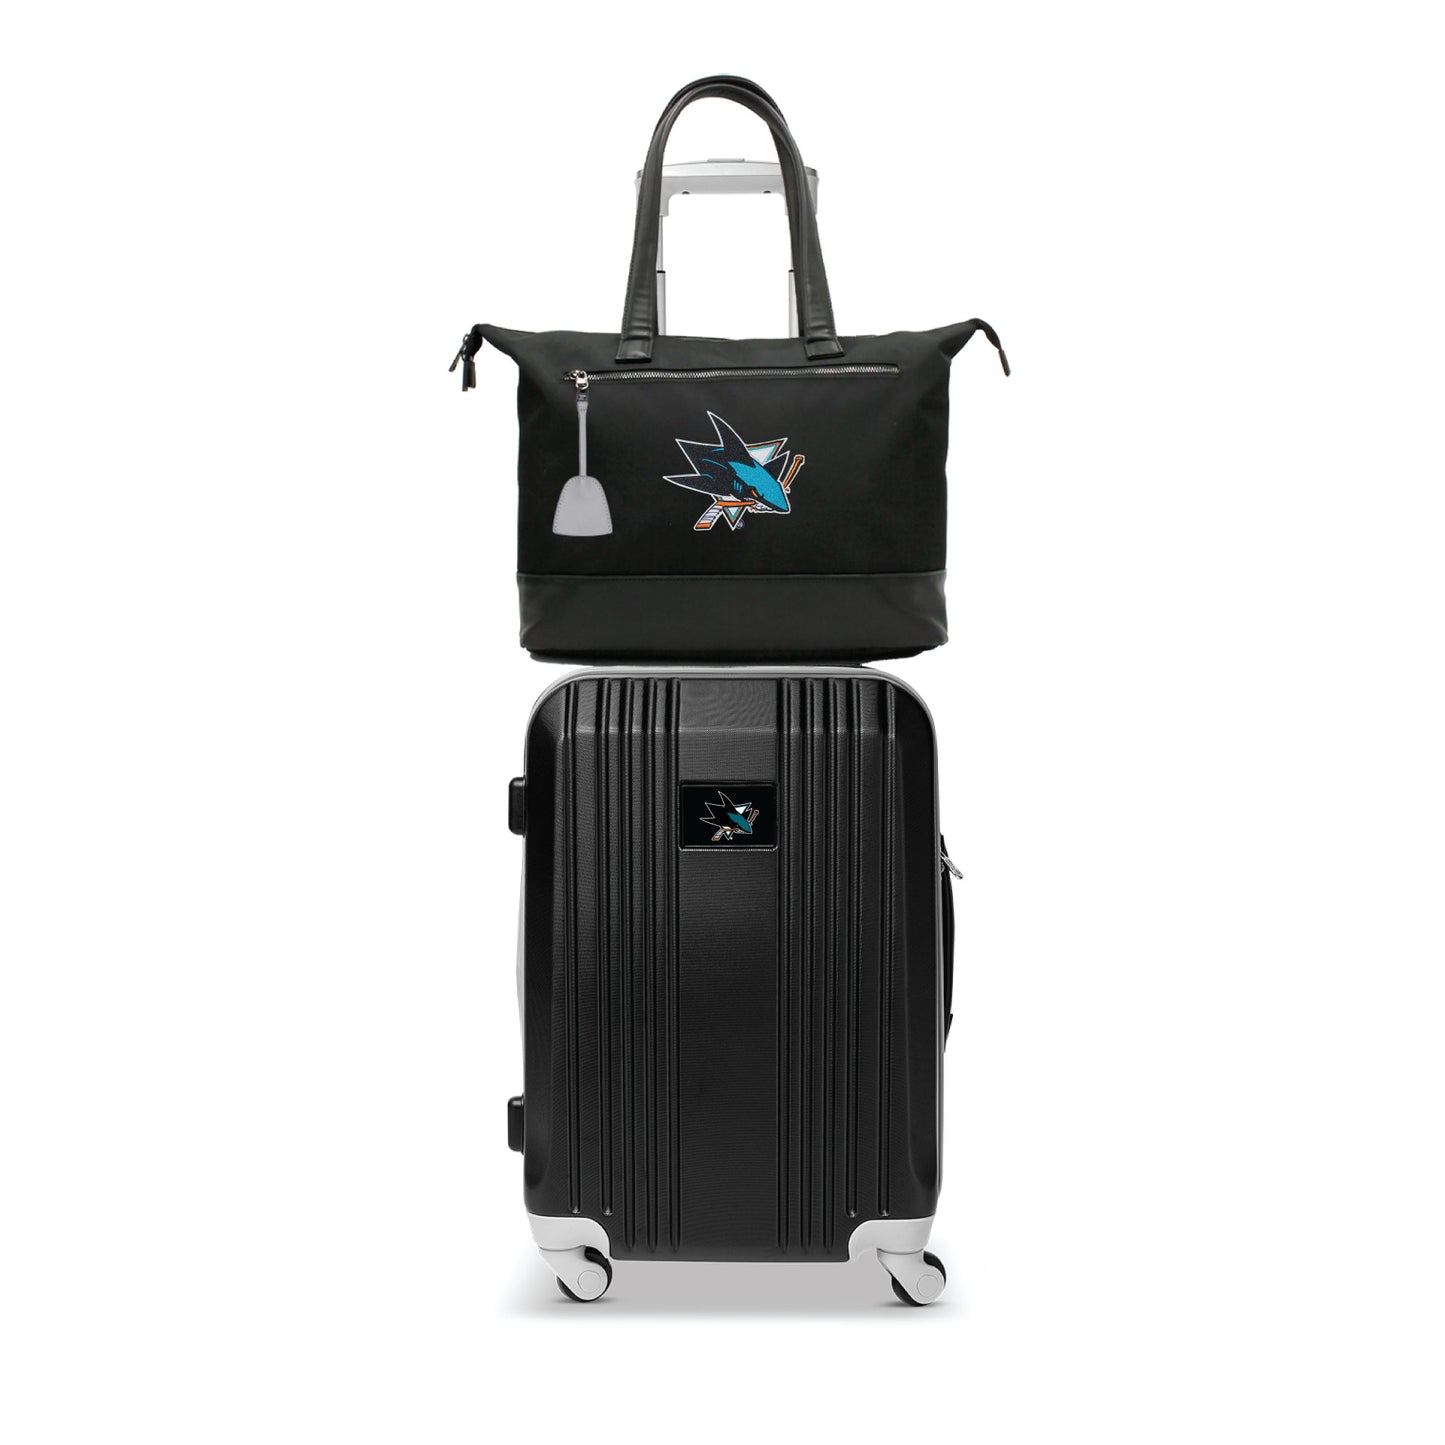 San Jose Sharks Premium Laptop Tote Bag and Luggage Set